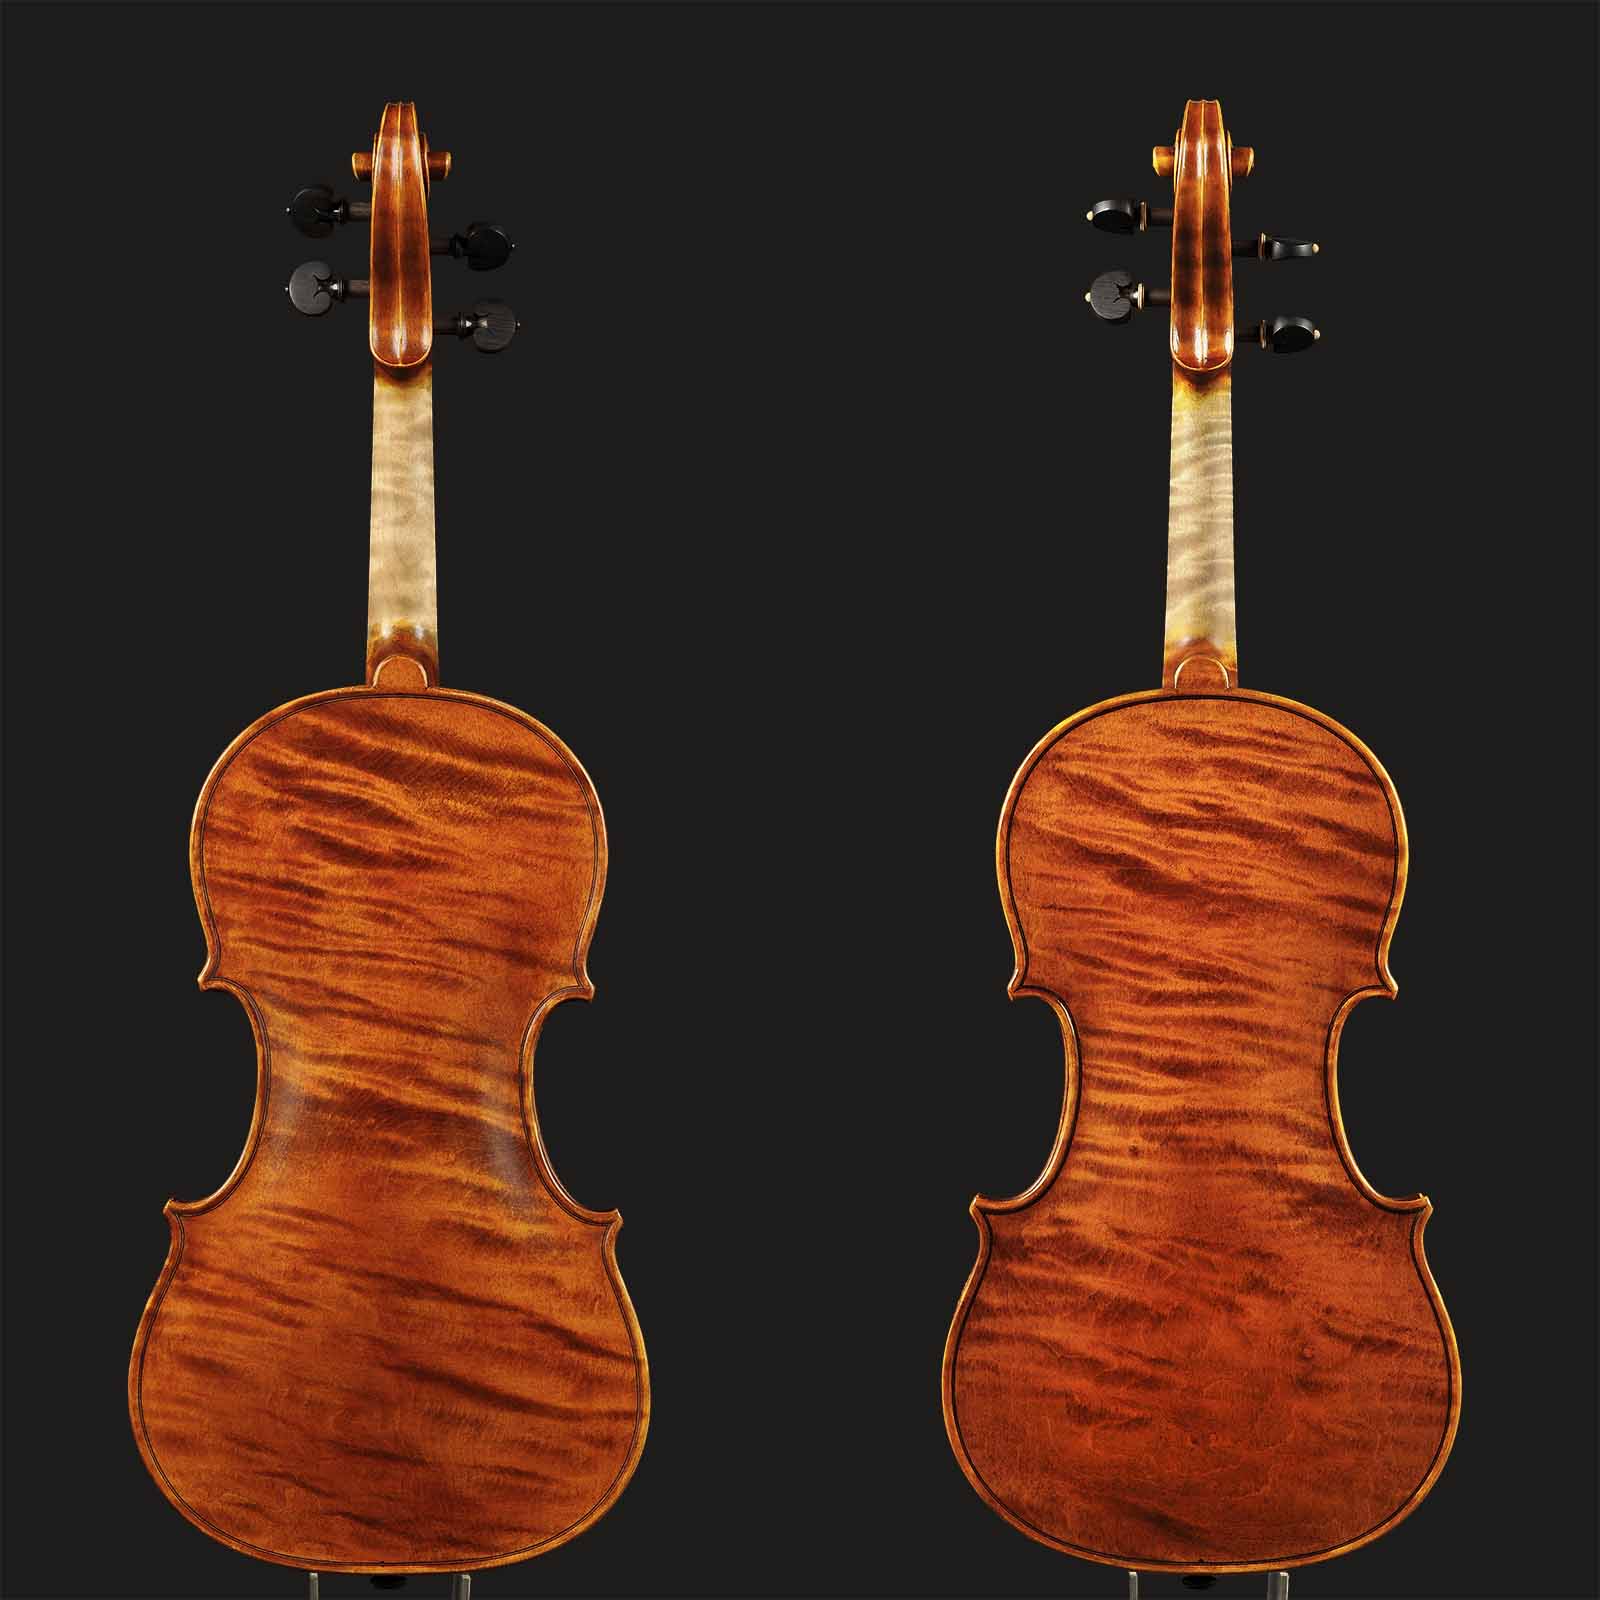 Stradivari & Del Gesù Stradivari & Mod. Del Gesù “The Twins“ - Image 2